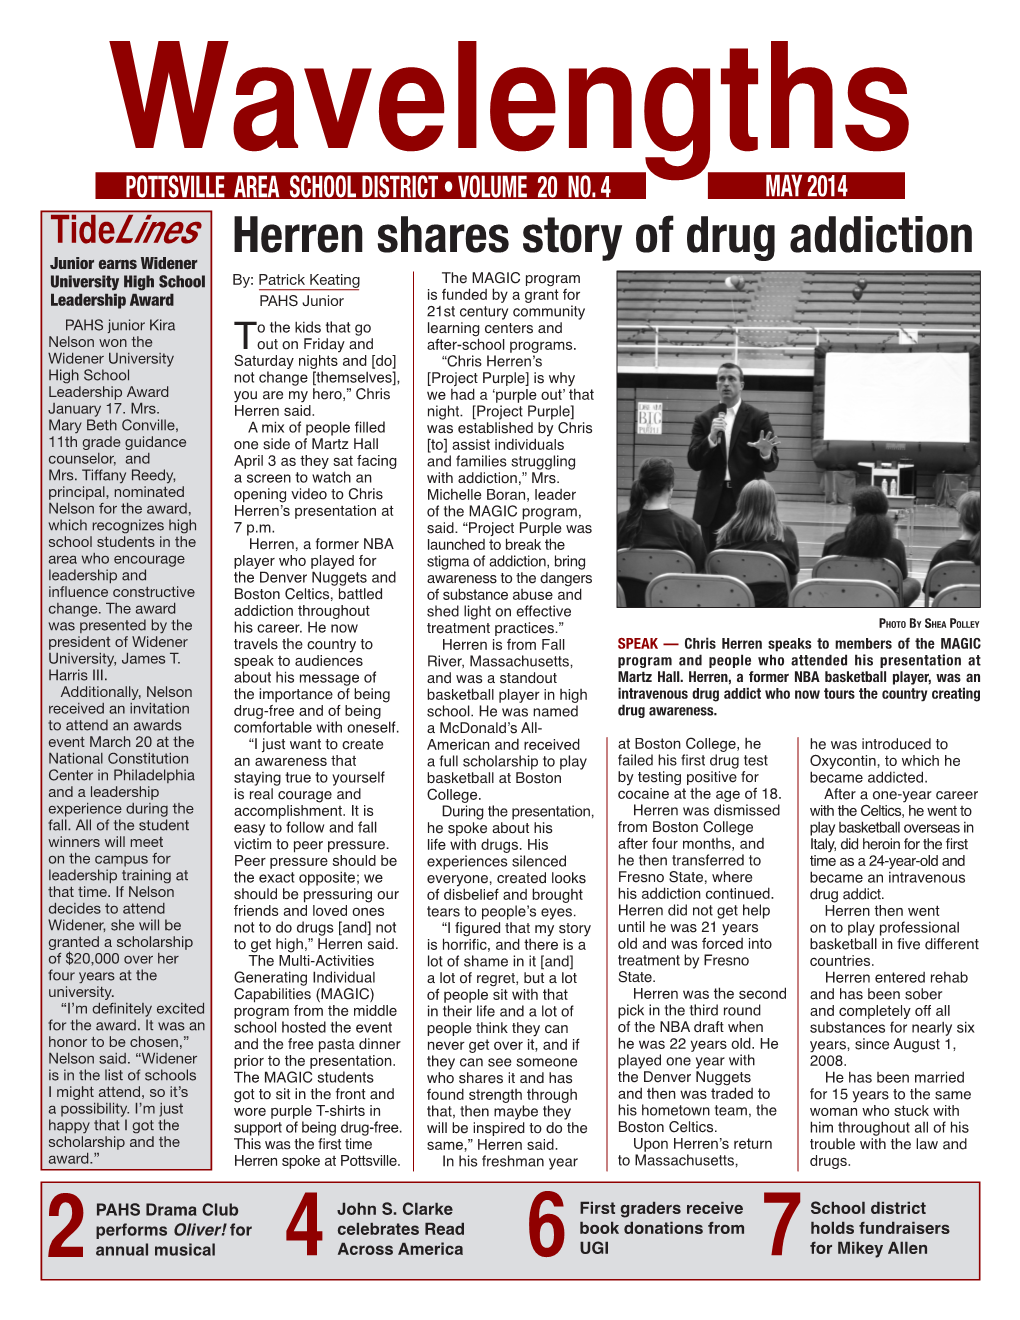 Tidelines Herren Shares Story of Drug Addiction